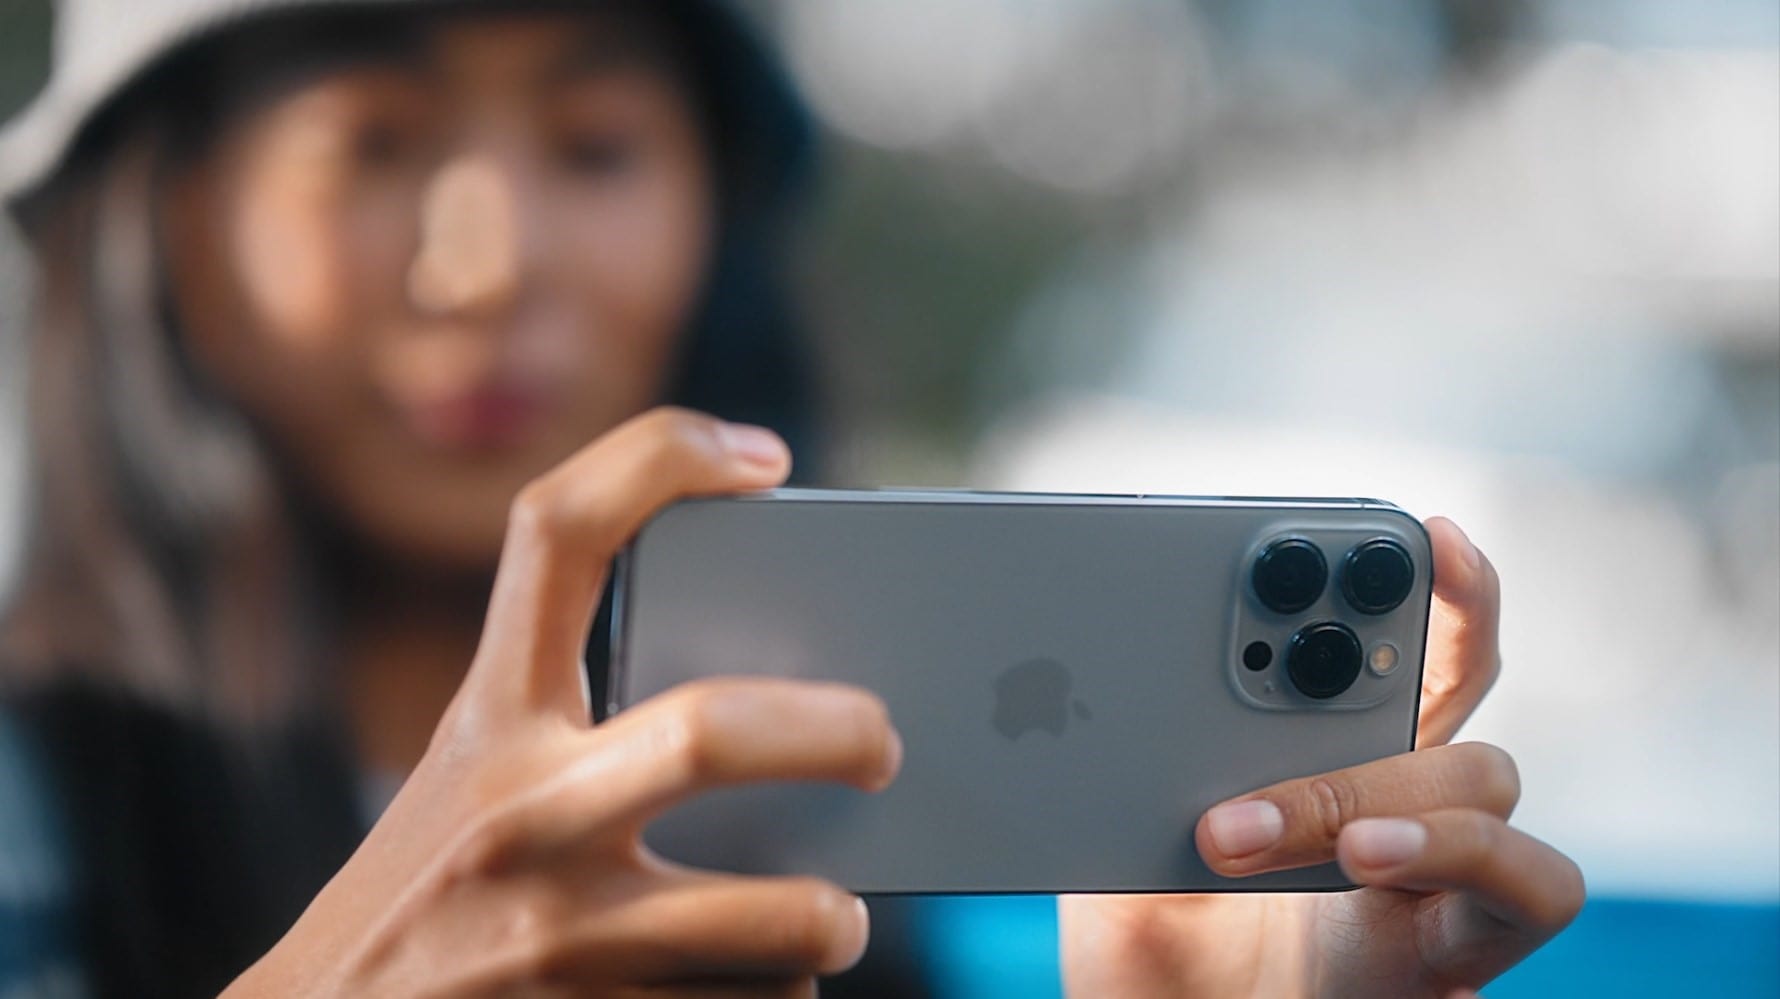 Nie błąd, a funkcja: Apple obiecuje naprawić tryb makro na iPhone 13 Pro smartfony